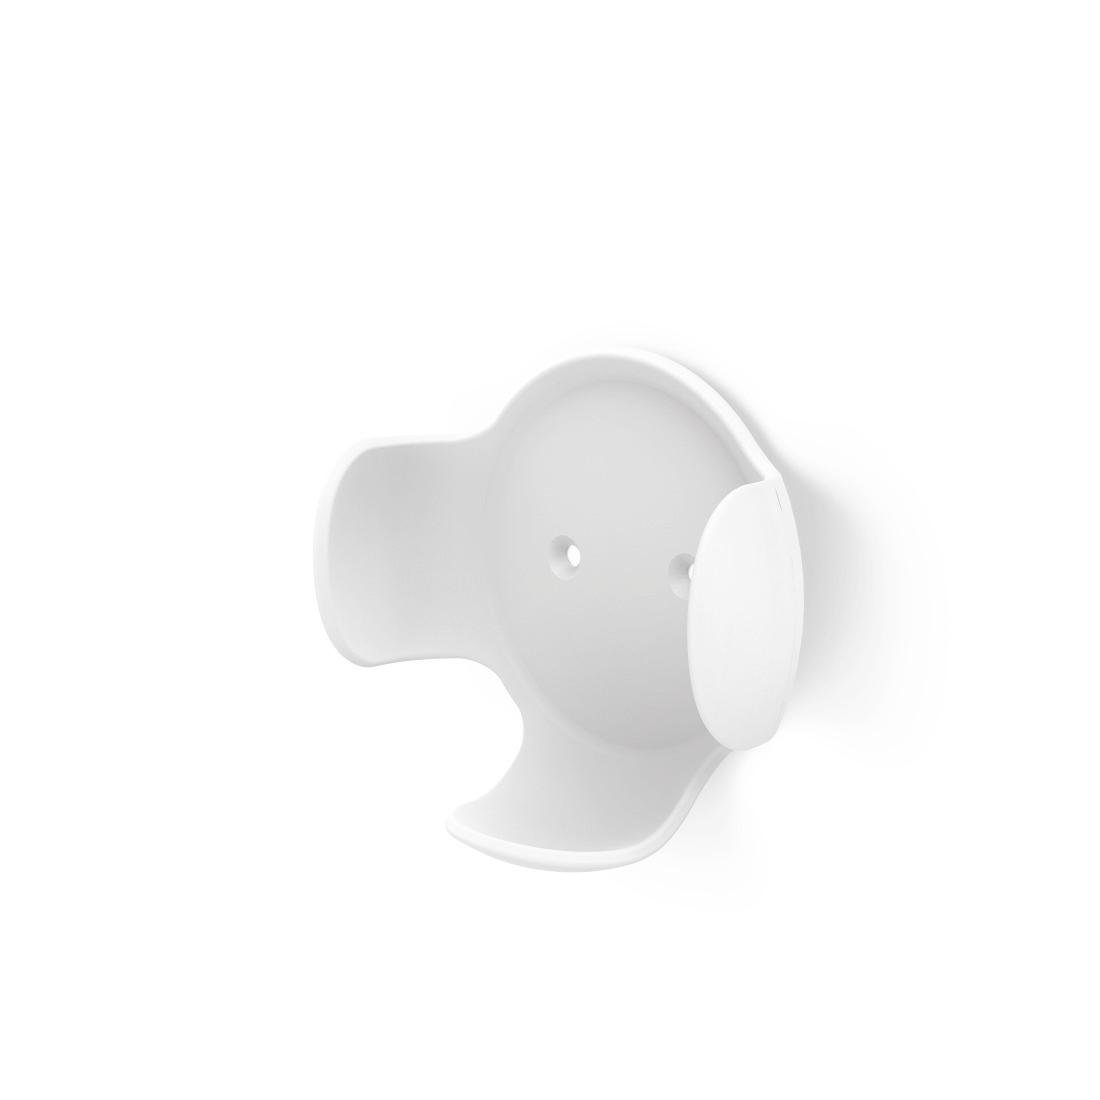 Hama Wandhalterung für Google Home, Nest mini, Weiß Lautsprecher-Wandhalterung